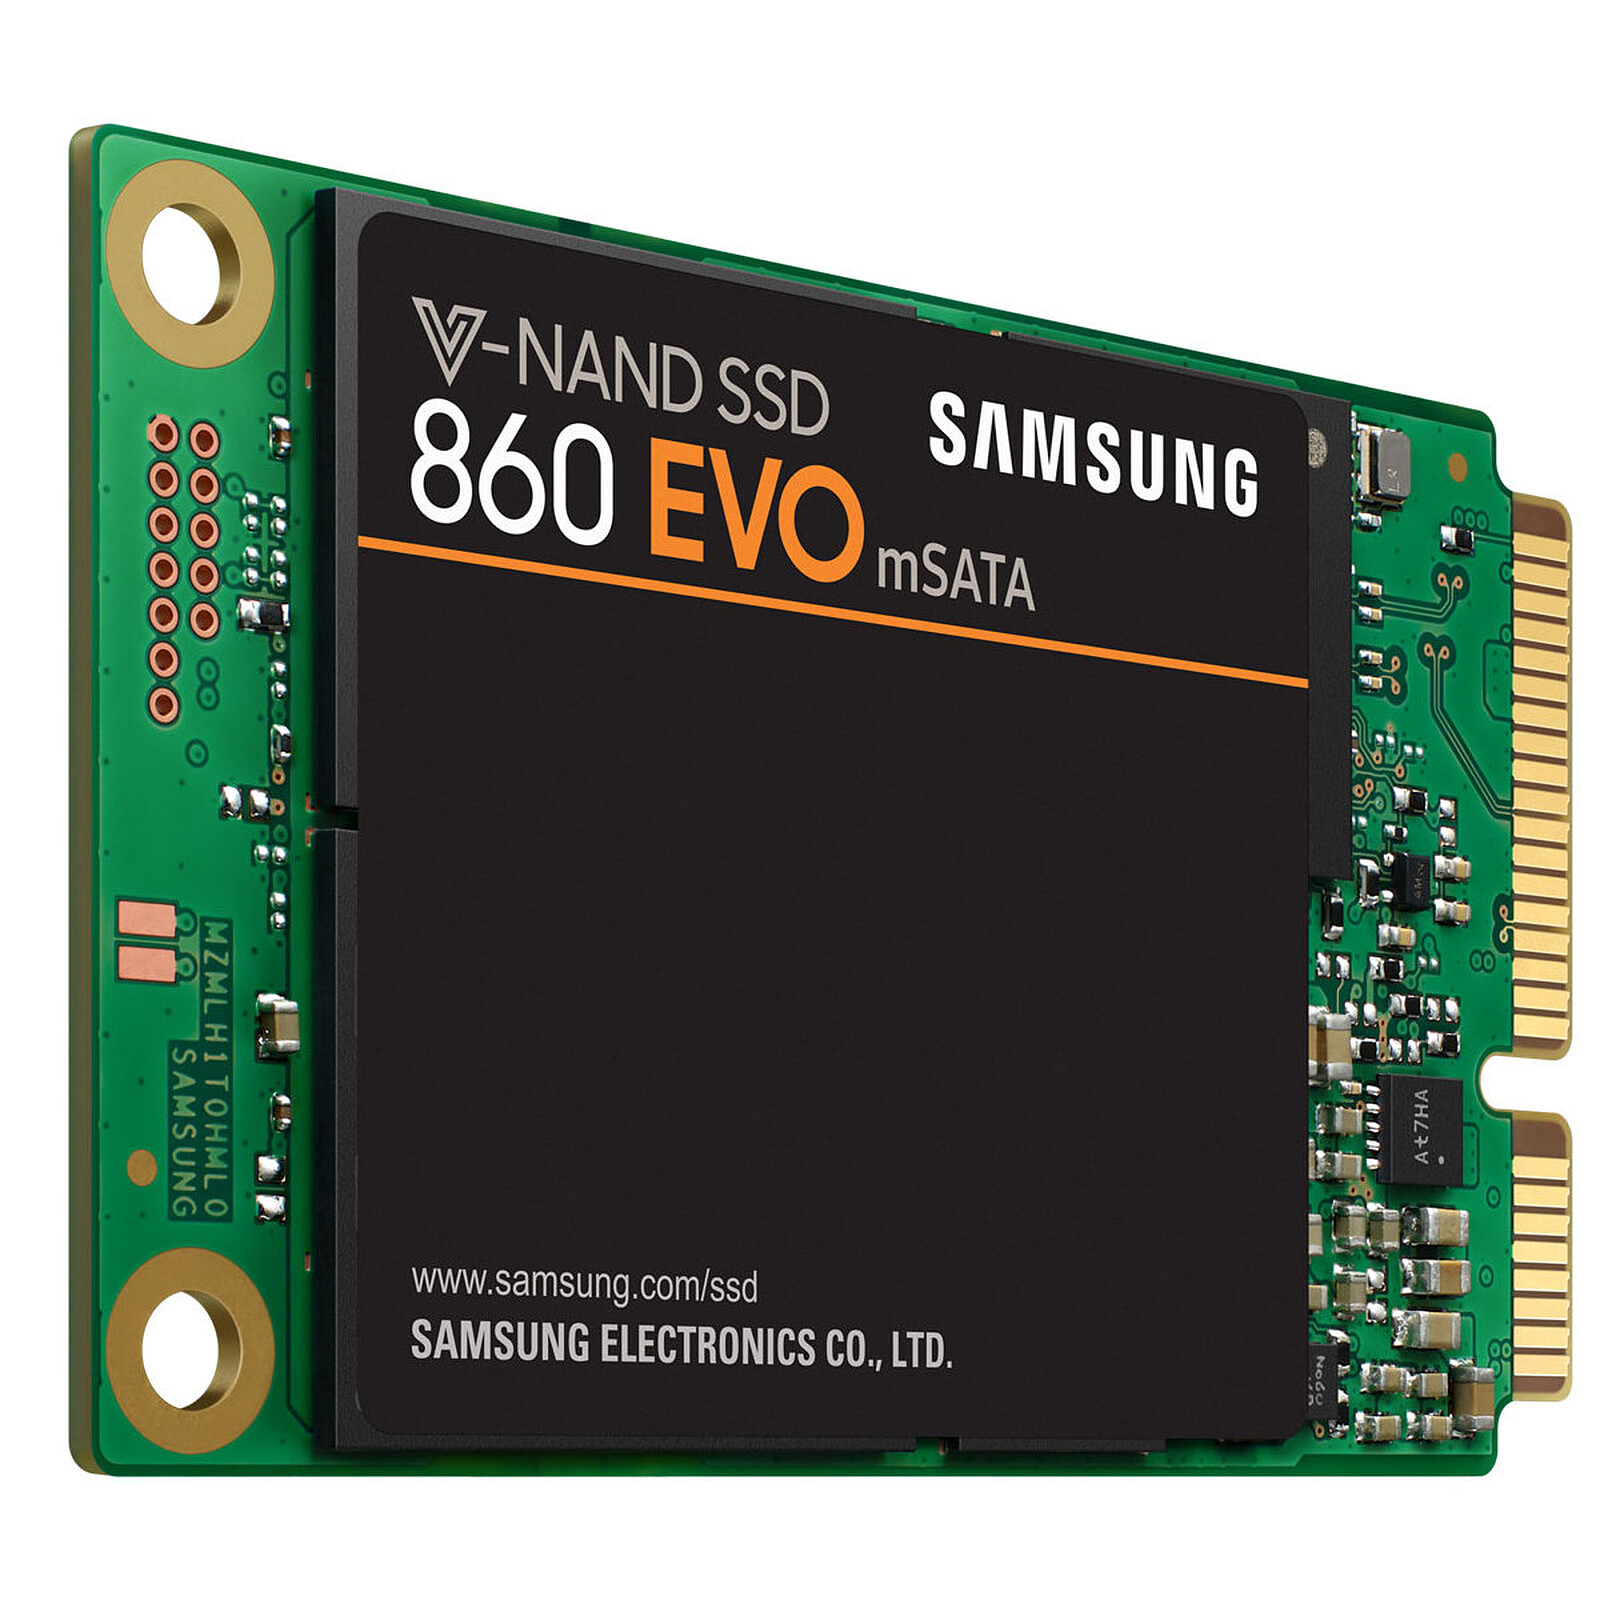 SAMSUNG-Disque SSD interne d'origine, 2.5 , 870 EVO SSD, 250 Go